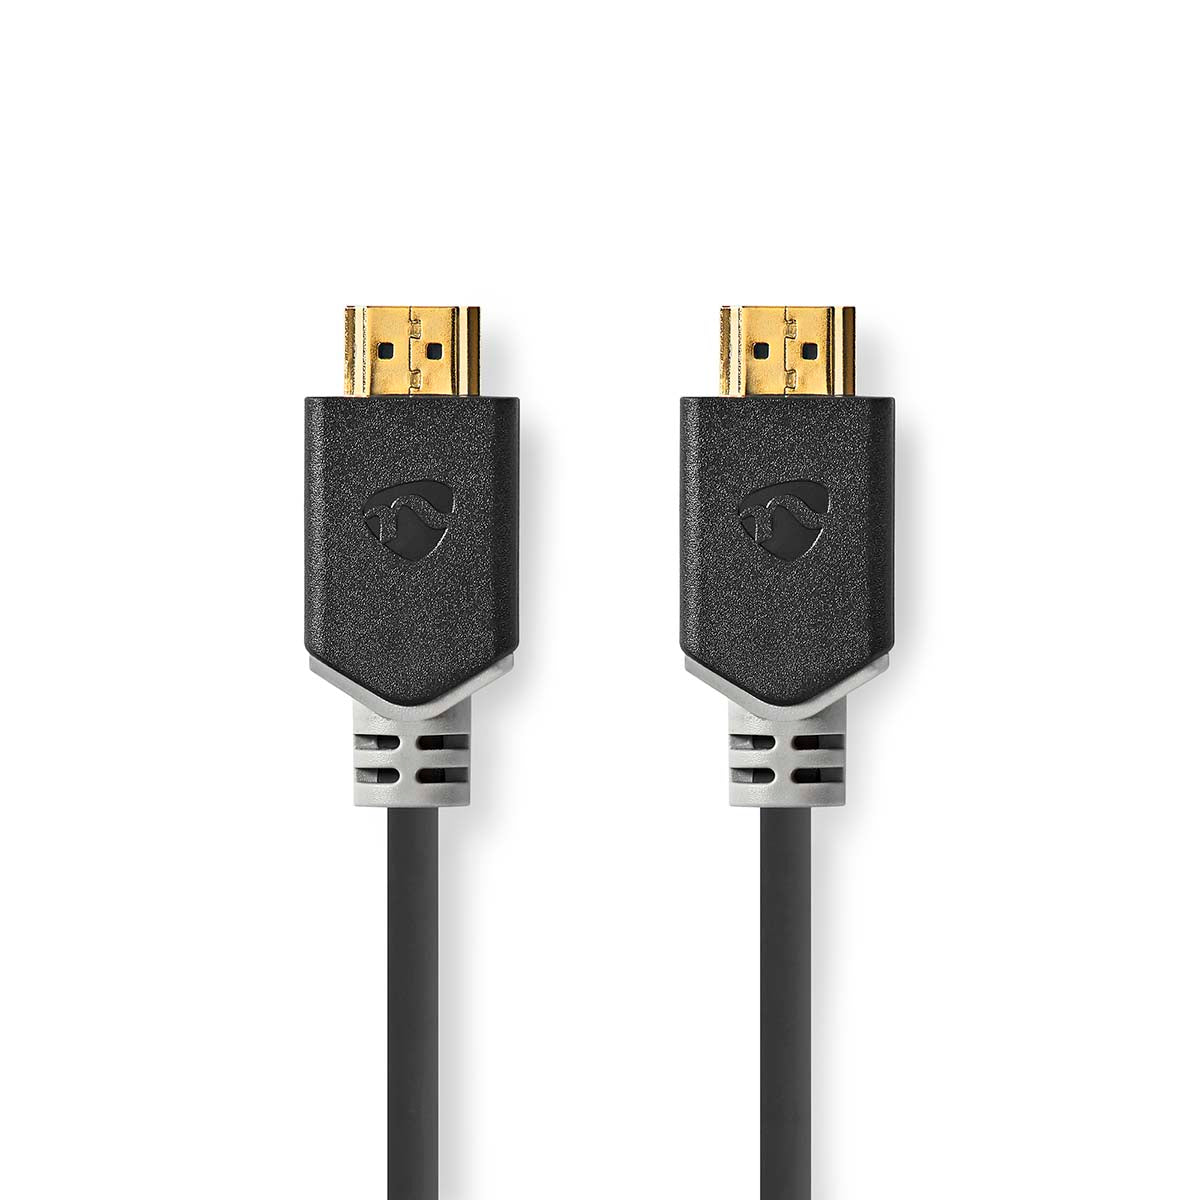 Premium High Speed HDMI ™ Kabel mit Ethernet | HDMI™ Stecker | HDMI™ Stecker | 4K@60Hz | 18 Gbps | 5.00 m | Rund | PVC | Anthrazit | Box